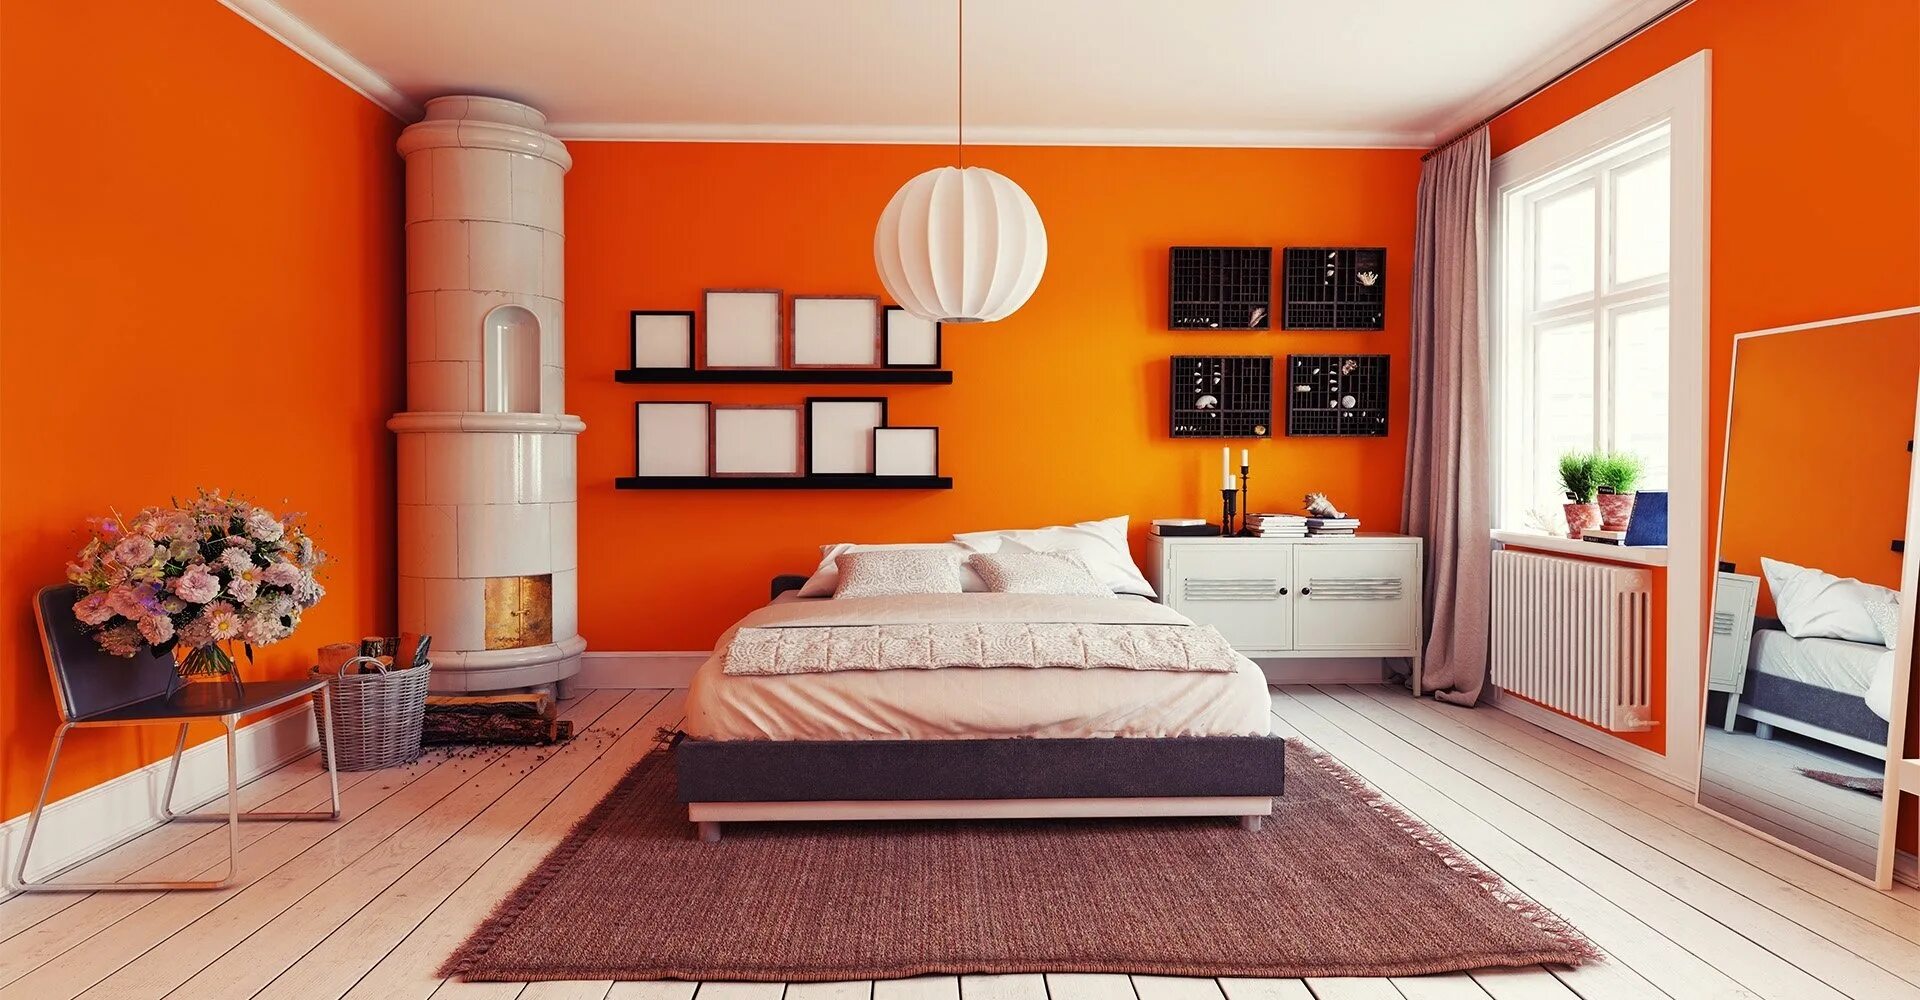 Сочетание цвета мебели в стенами. Оранжевая спальня. Комната с оранжевыми стенами. Спальня в оранжевых тонах. Оранжевый в интерьере спальни.